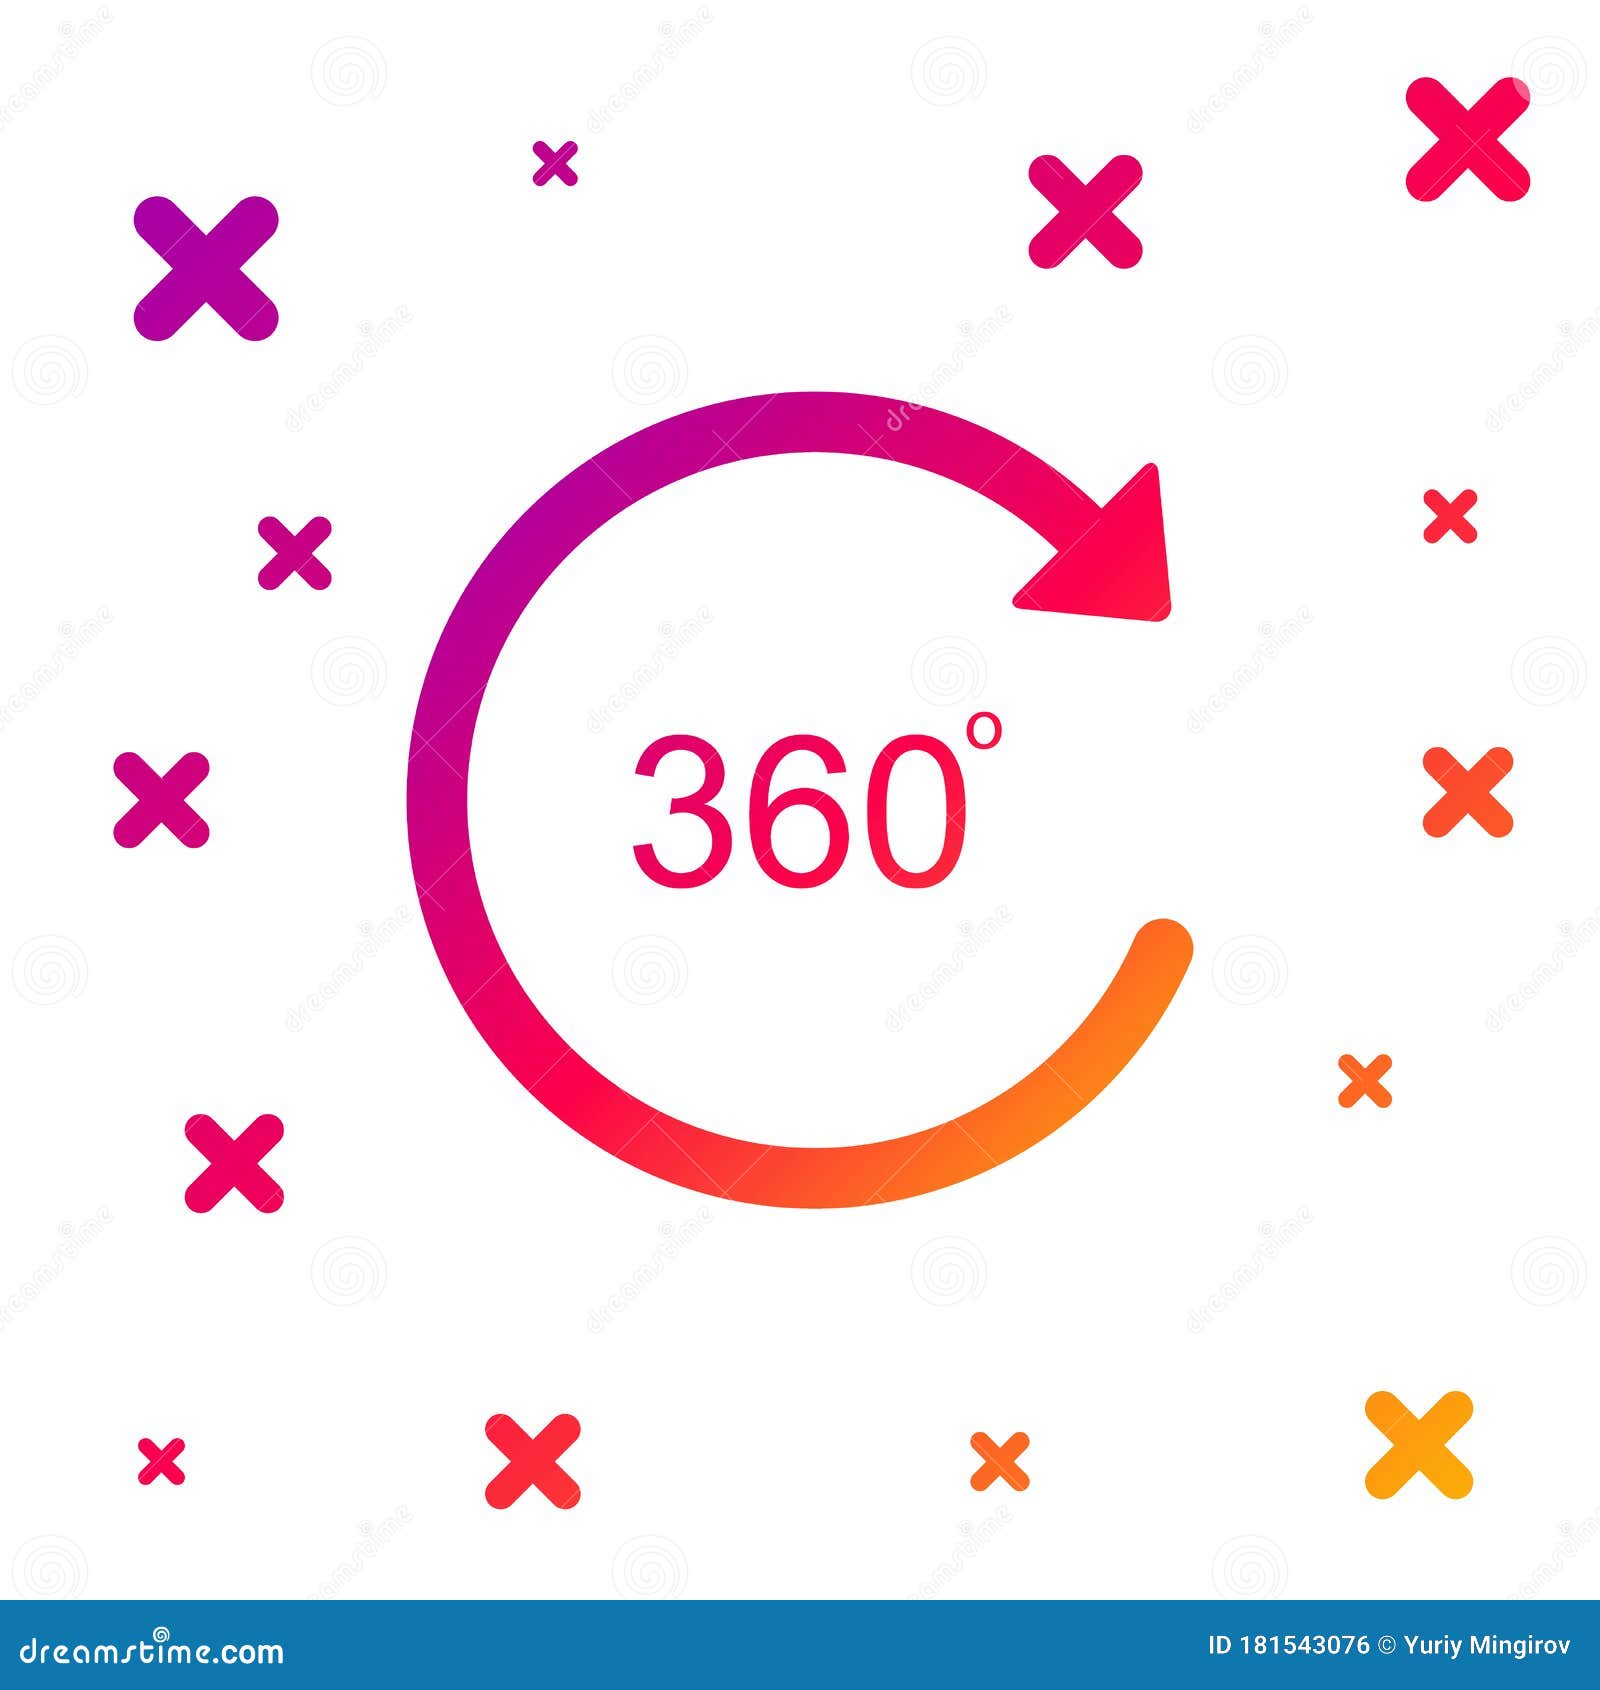 Với icon 360 degree color angle, bạn có thể chọn được màu sắc phù hợp nhất cho website của mình chỉ với một cái nhìn duy nhất. Hãy xem hình ảnh liên quan để khám phá thêm về icon này và những ứng dụng thú vị của nó nhé!